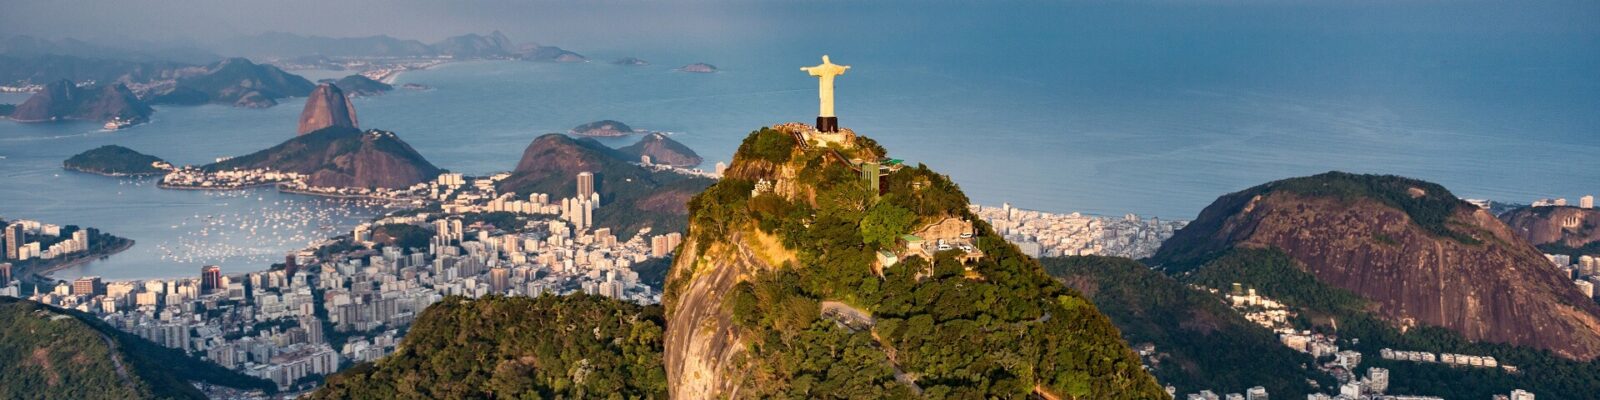 Brazil:  A destination to watch